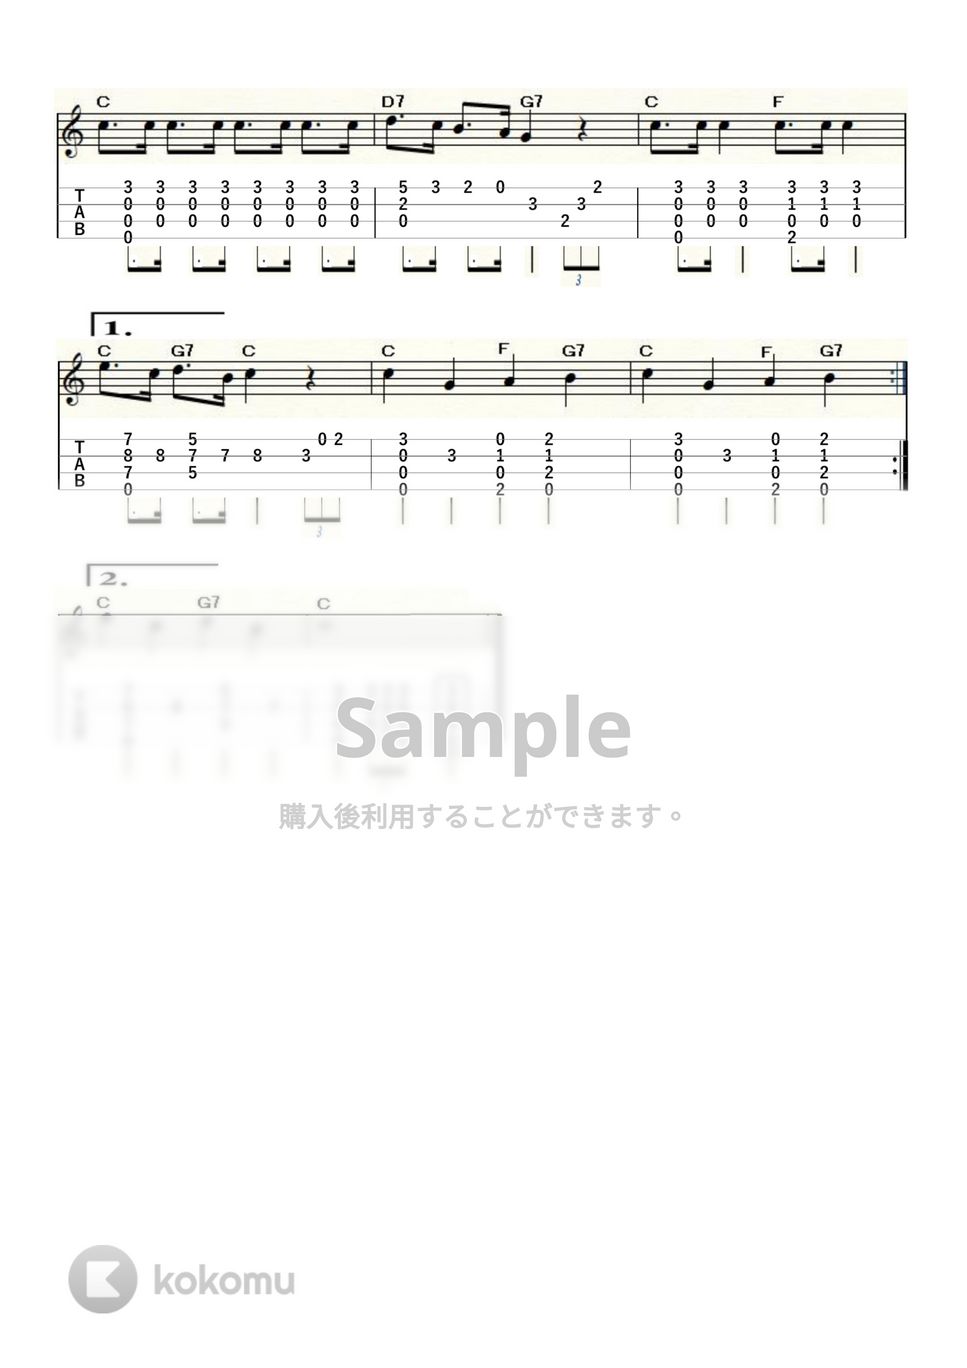 ジミー・ドッド - ミッキーマウス・マーチ (ｳｸﾚﾚｿﾛ/High-G・Low-G/中級) by ukulelepapa